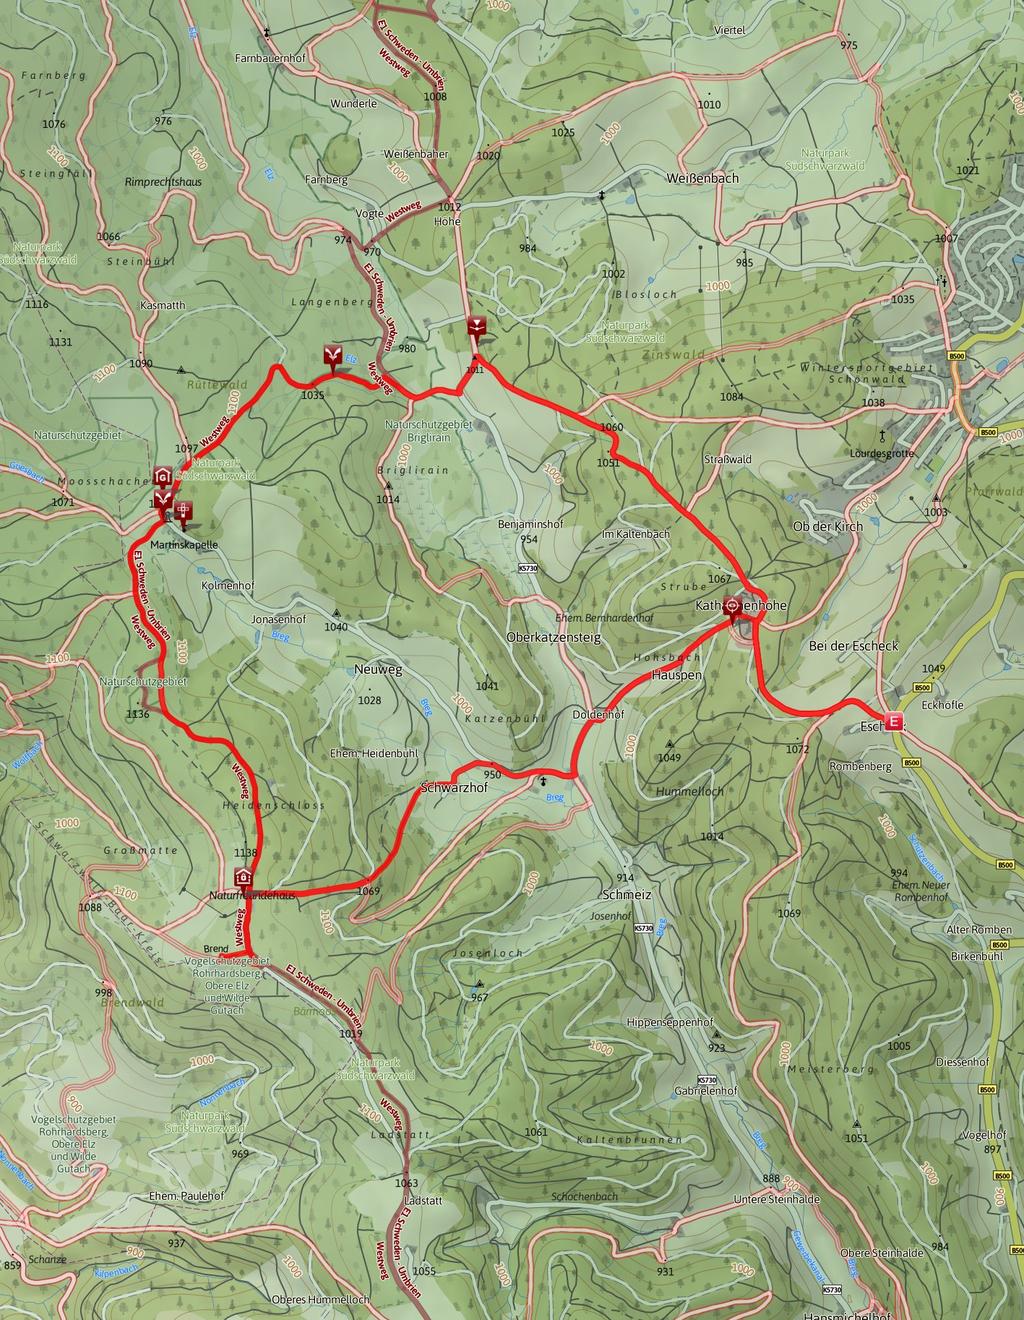 11.6 km 3:15 h 330 m 330 m SCHWIERIGKEIT mittel Kartengrundlagen: outdooractive Kartografie; Deutschland: Geoinformationen Vermessungsverwaltungen der Bundesländer und BKG (www.bkg.bund.